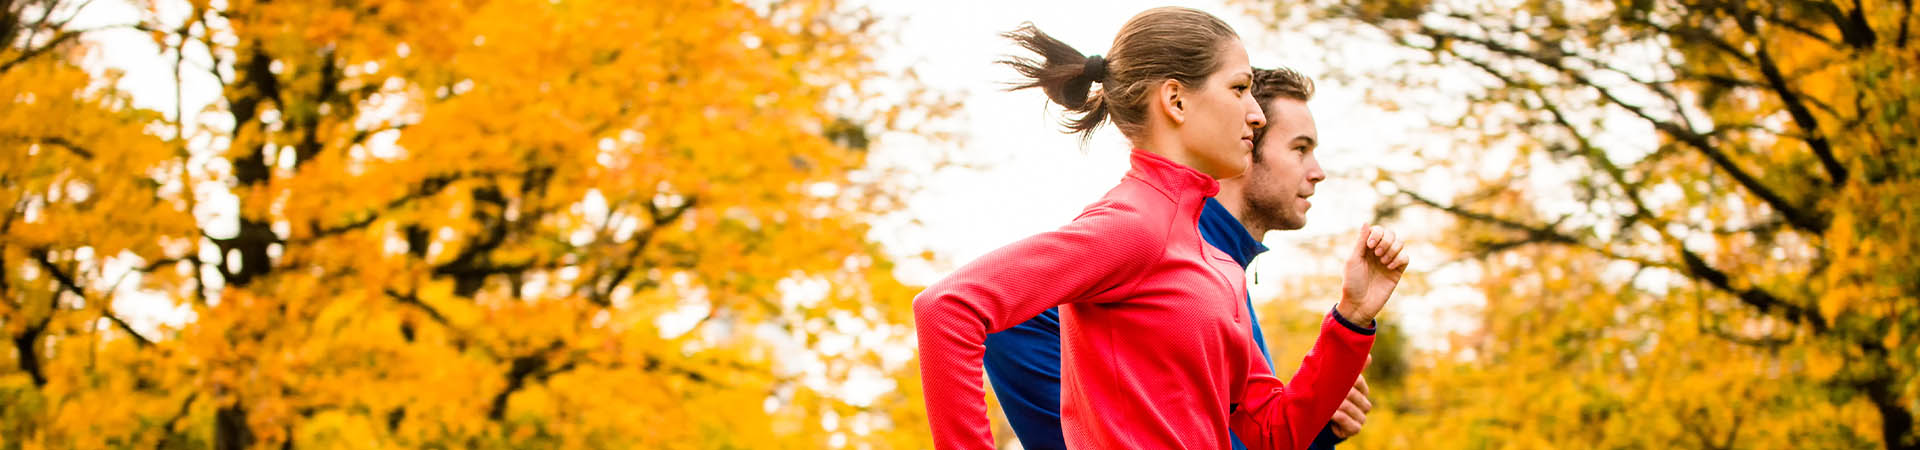 Correr es sano: una mujer y un hombre corren por un parque.